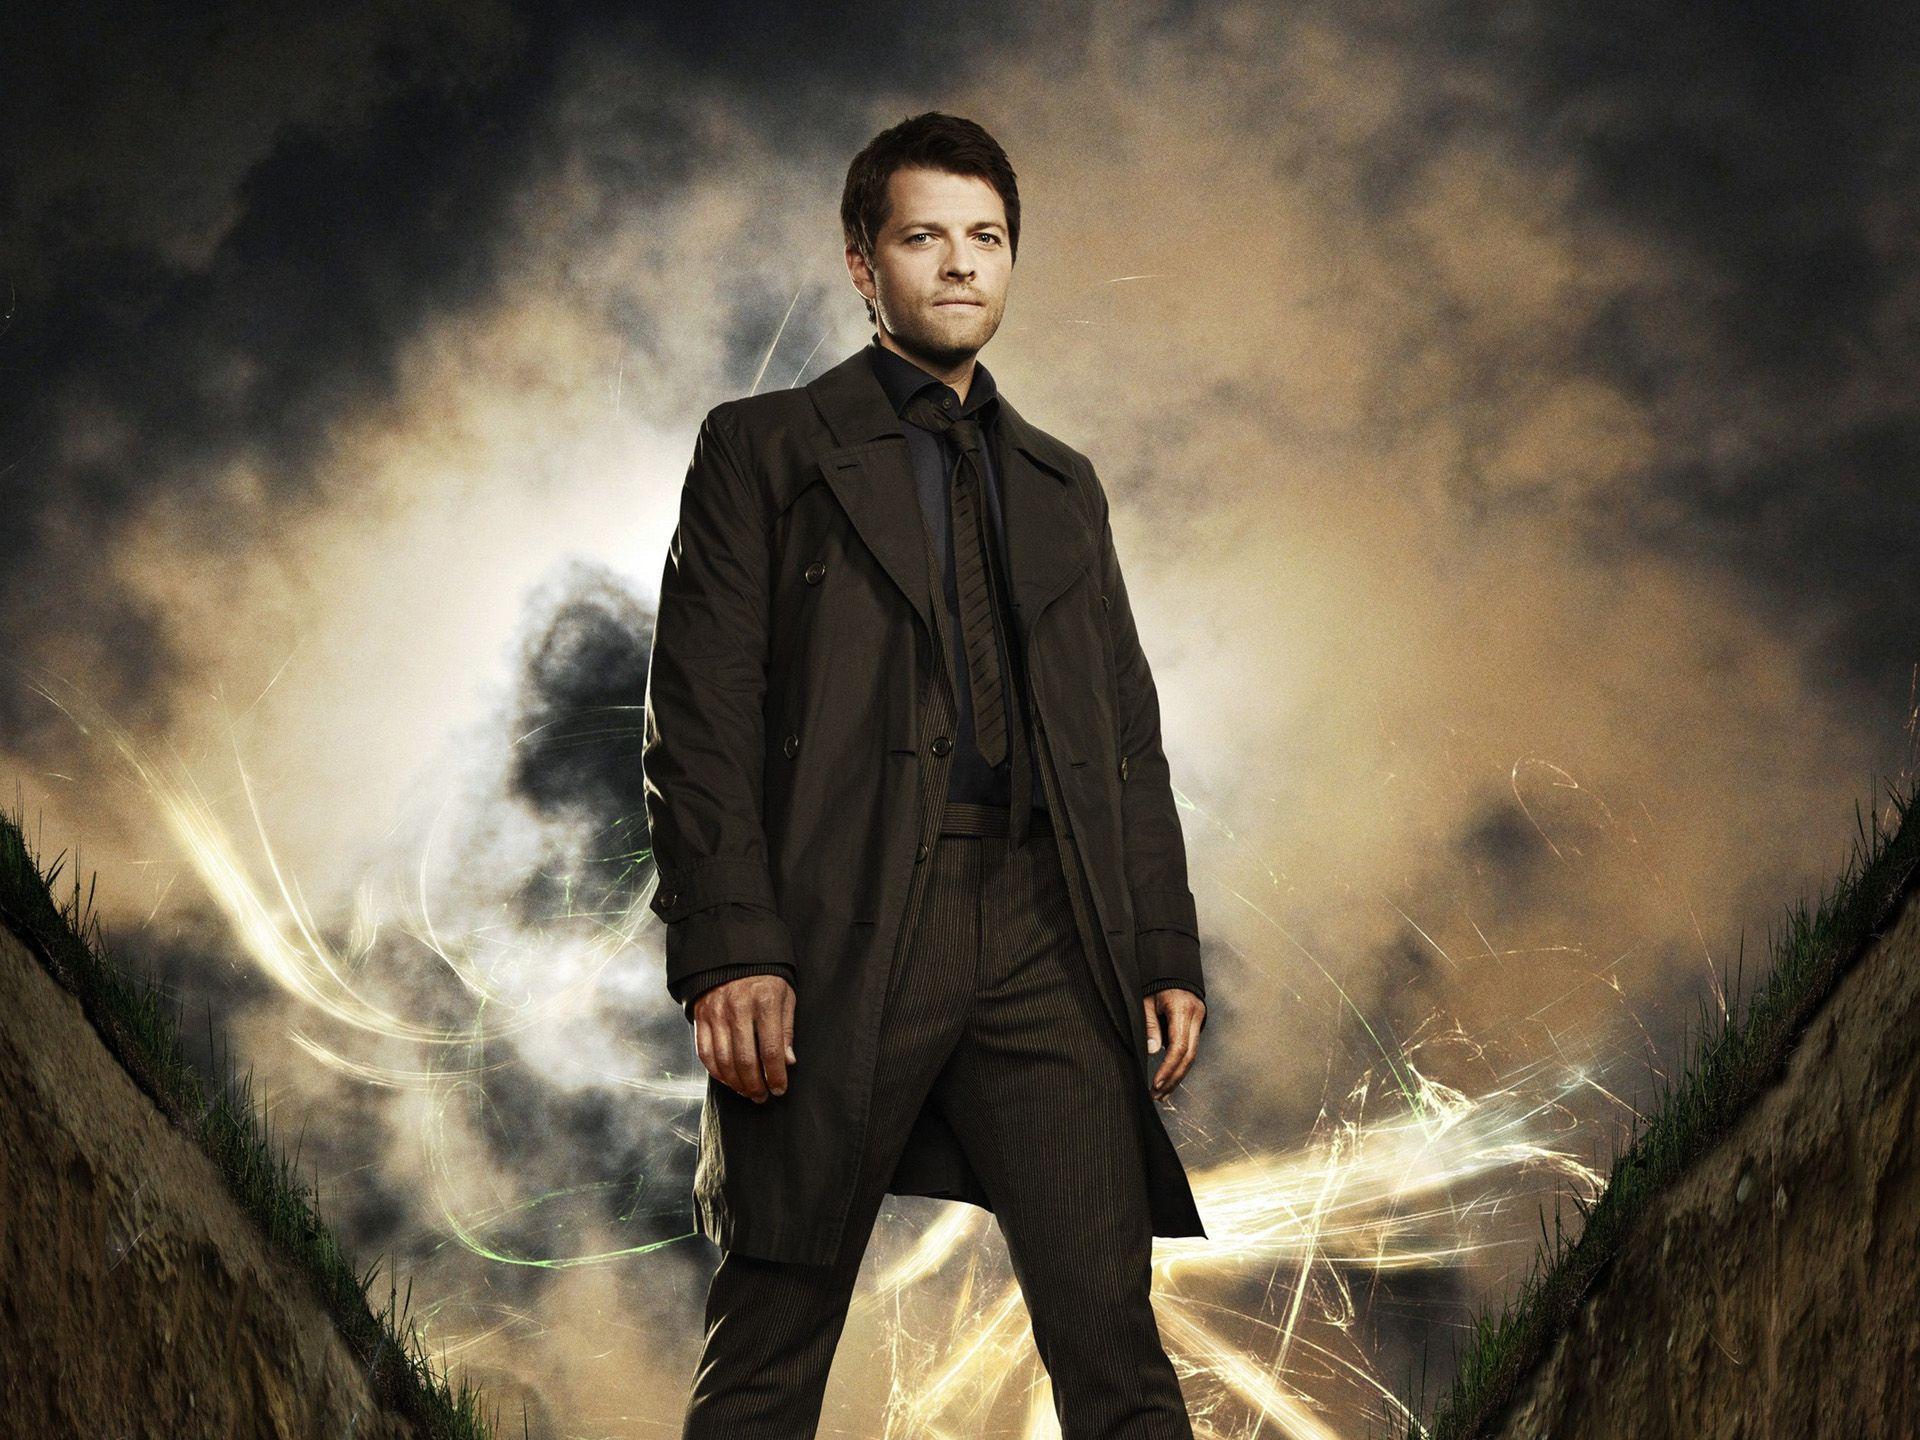 Supernatural Season 5 Wallpaper